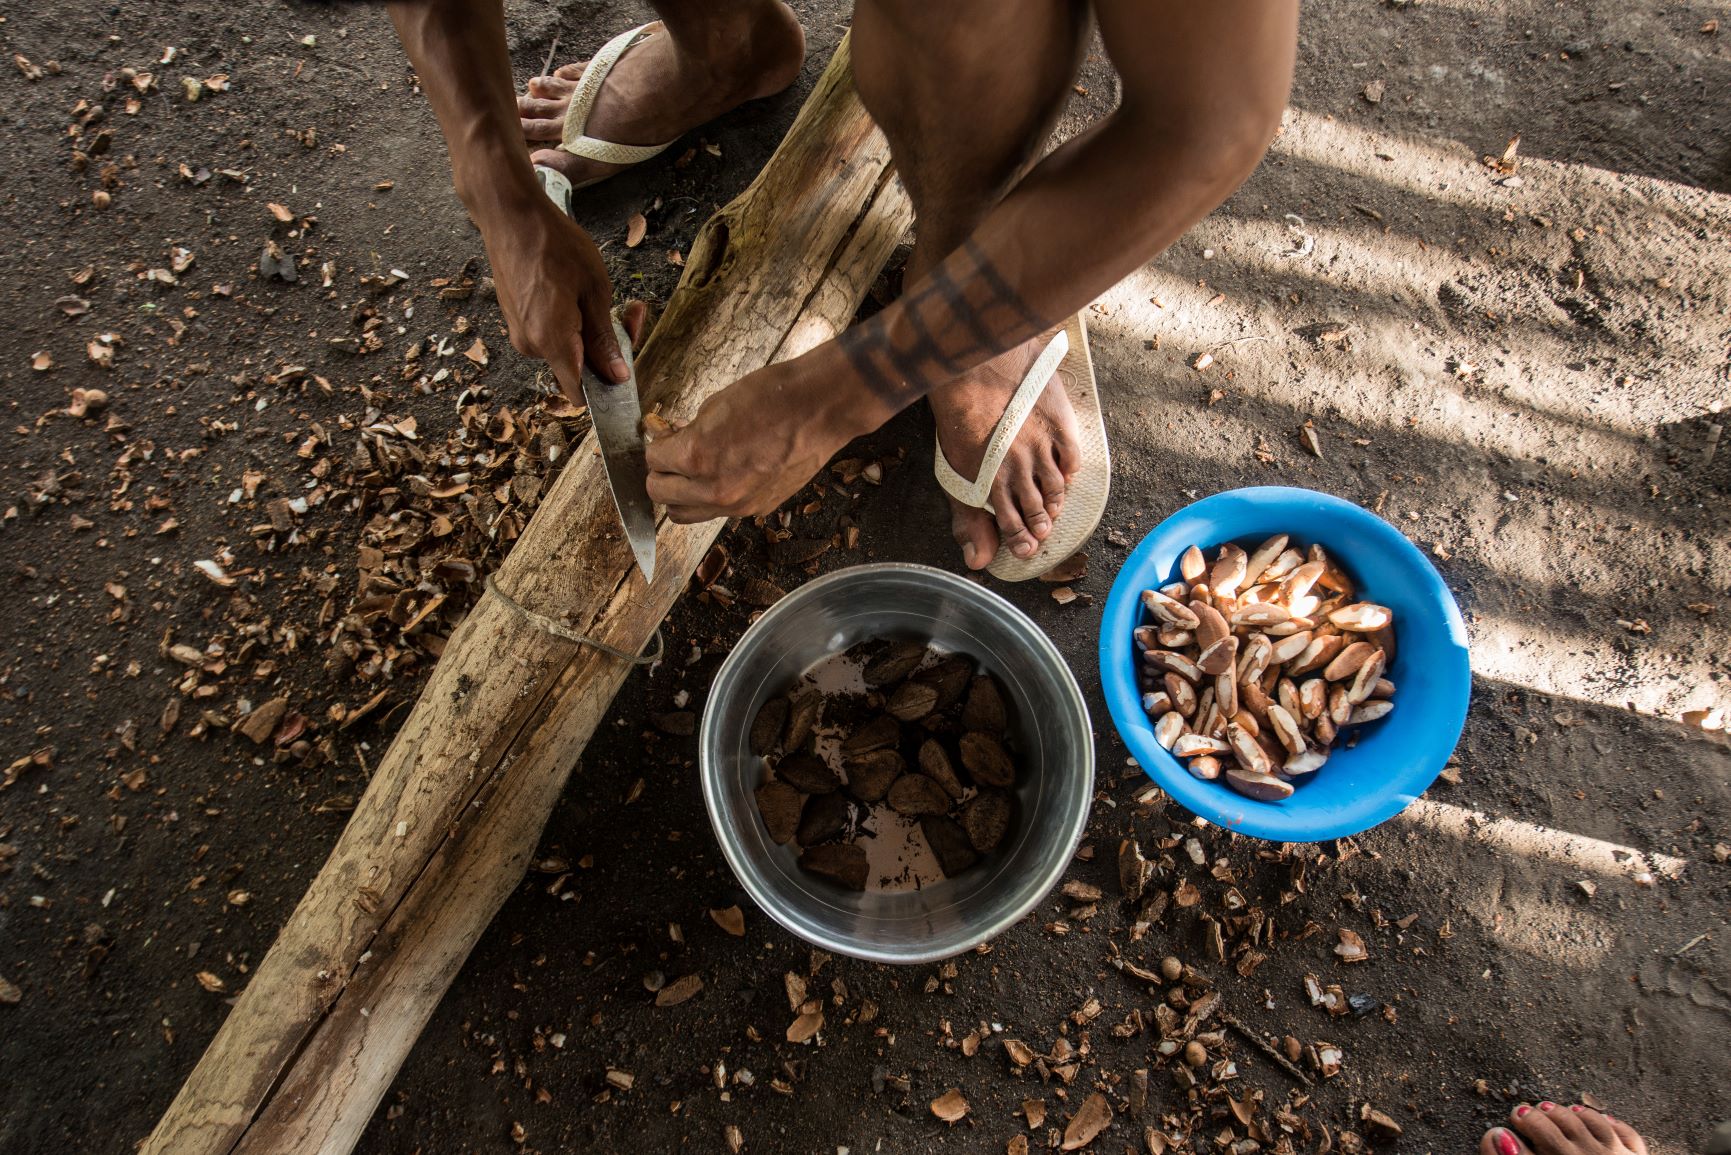 Bioeconomia na Amazônia: projetos precisam levar em conta a diversidade da região e empoderar produtores locais